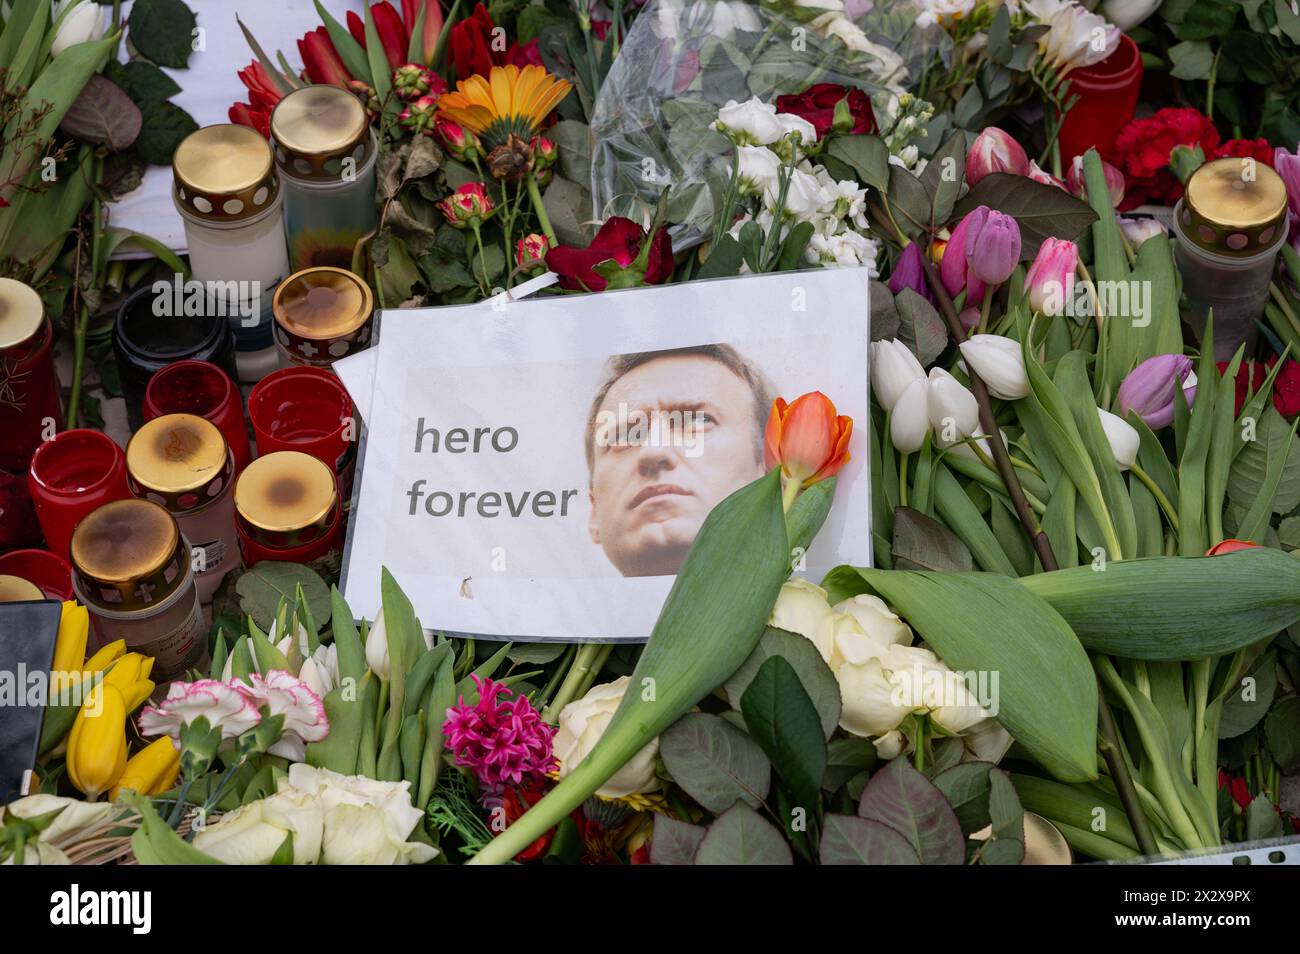 24.02.2024, Berlin, , Allemagne - Europe - un mémorial improvisé fait de fleurs, de bougies et d'images pour le chef de l'opposition russe Alexei Navalny Banque D'Images